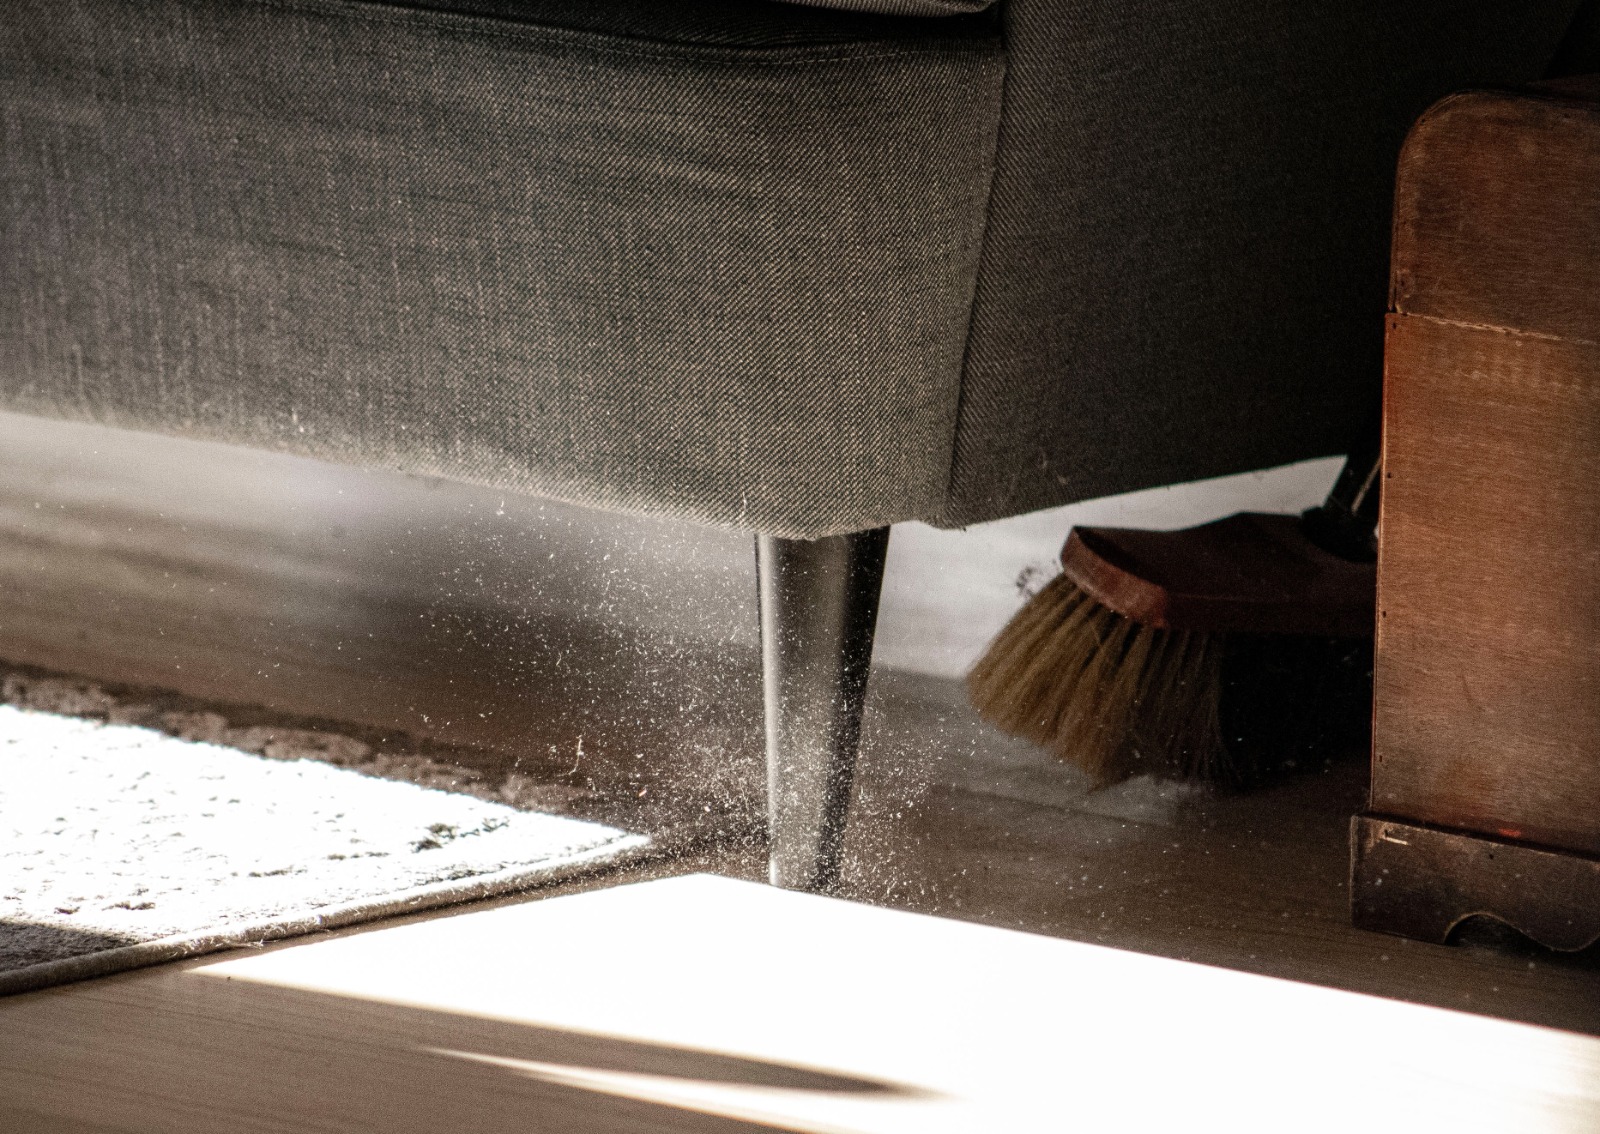 El estudio de Dyson sobre el polvo en el mundo revela que la limpieza en el hogar se ha vuelto reactiva y no rutinaria después de la pandemia del COVID-19